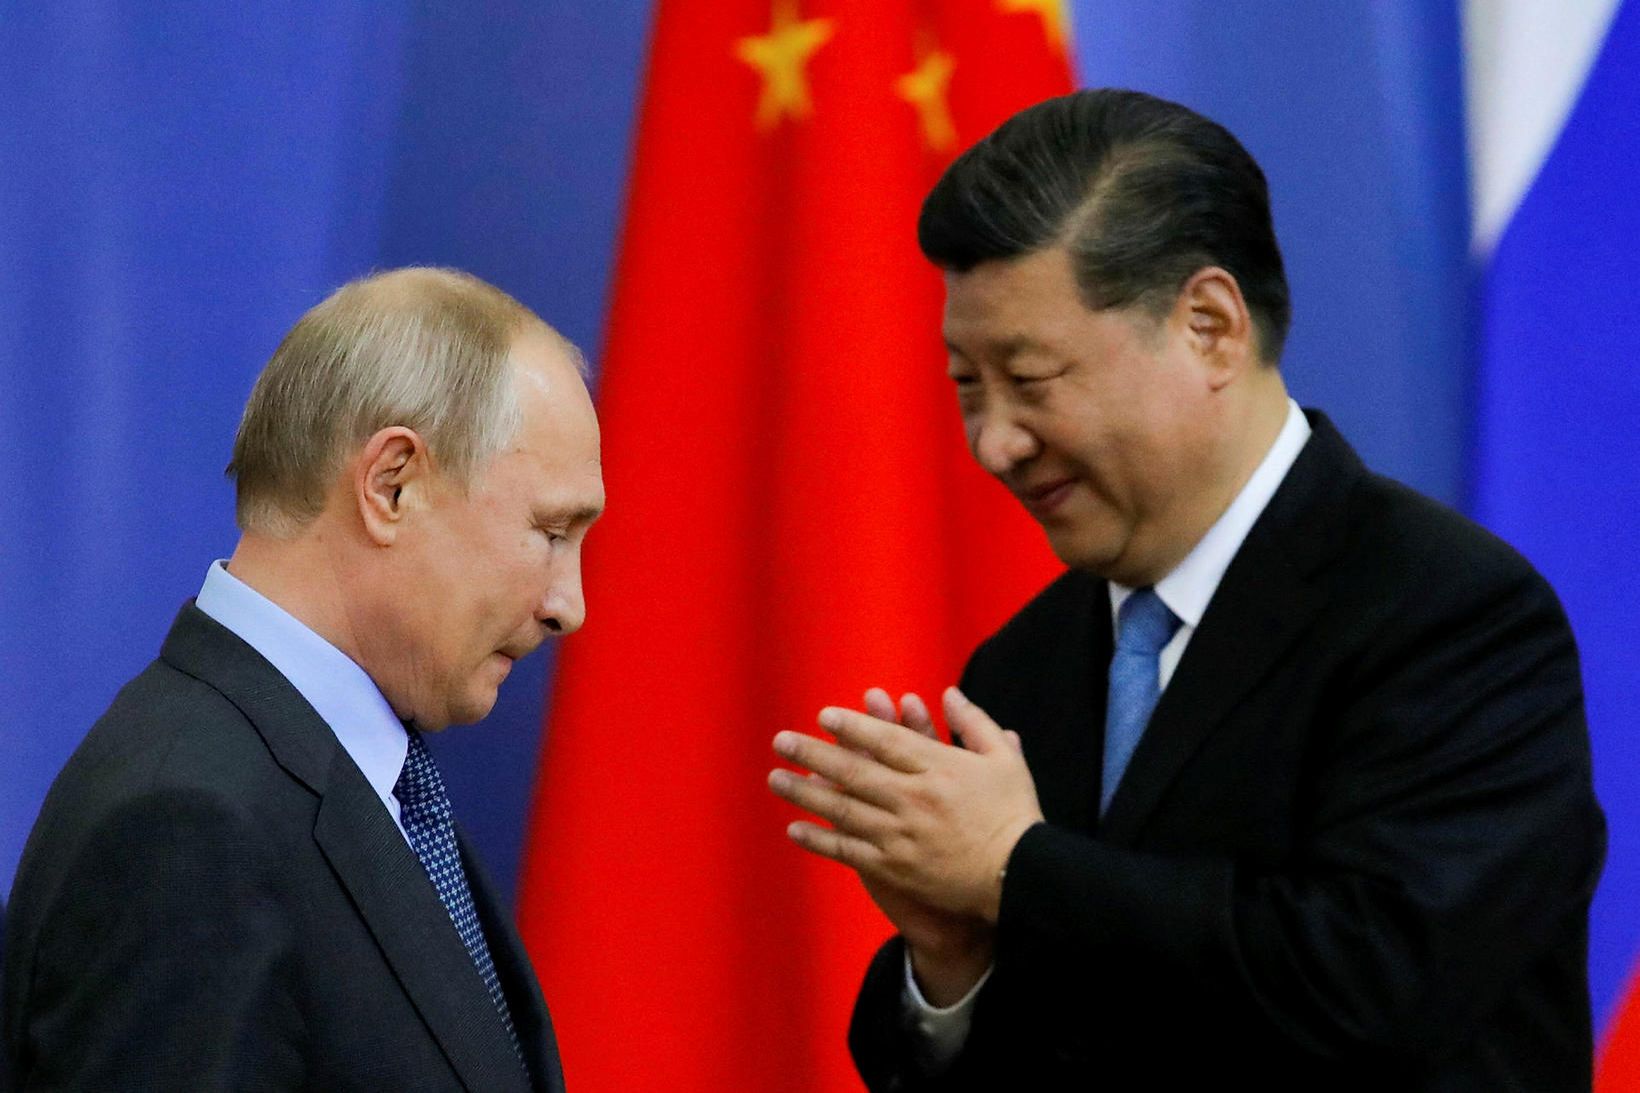 Vladimír Pútín Rússlandsforseti og Xi Jinping forseti Kína árið 2019.